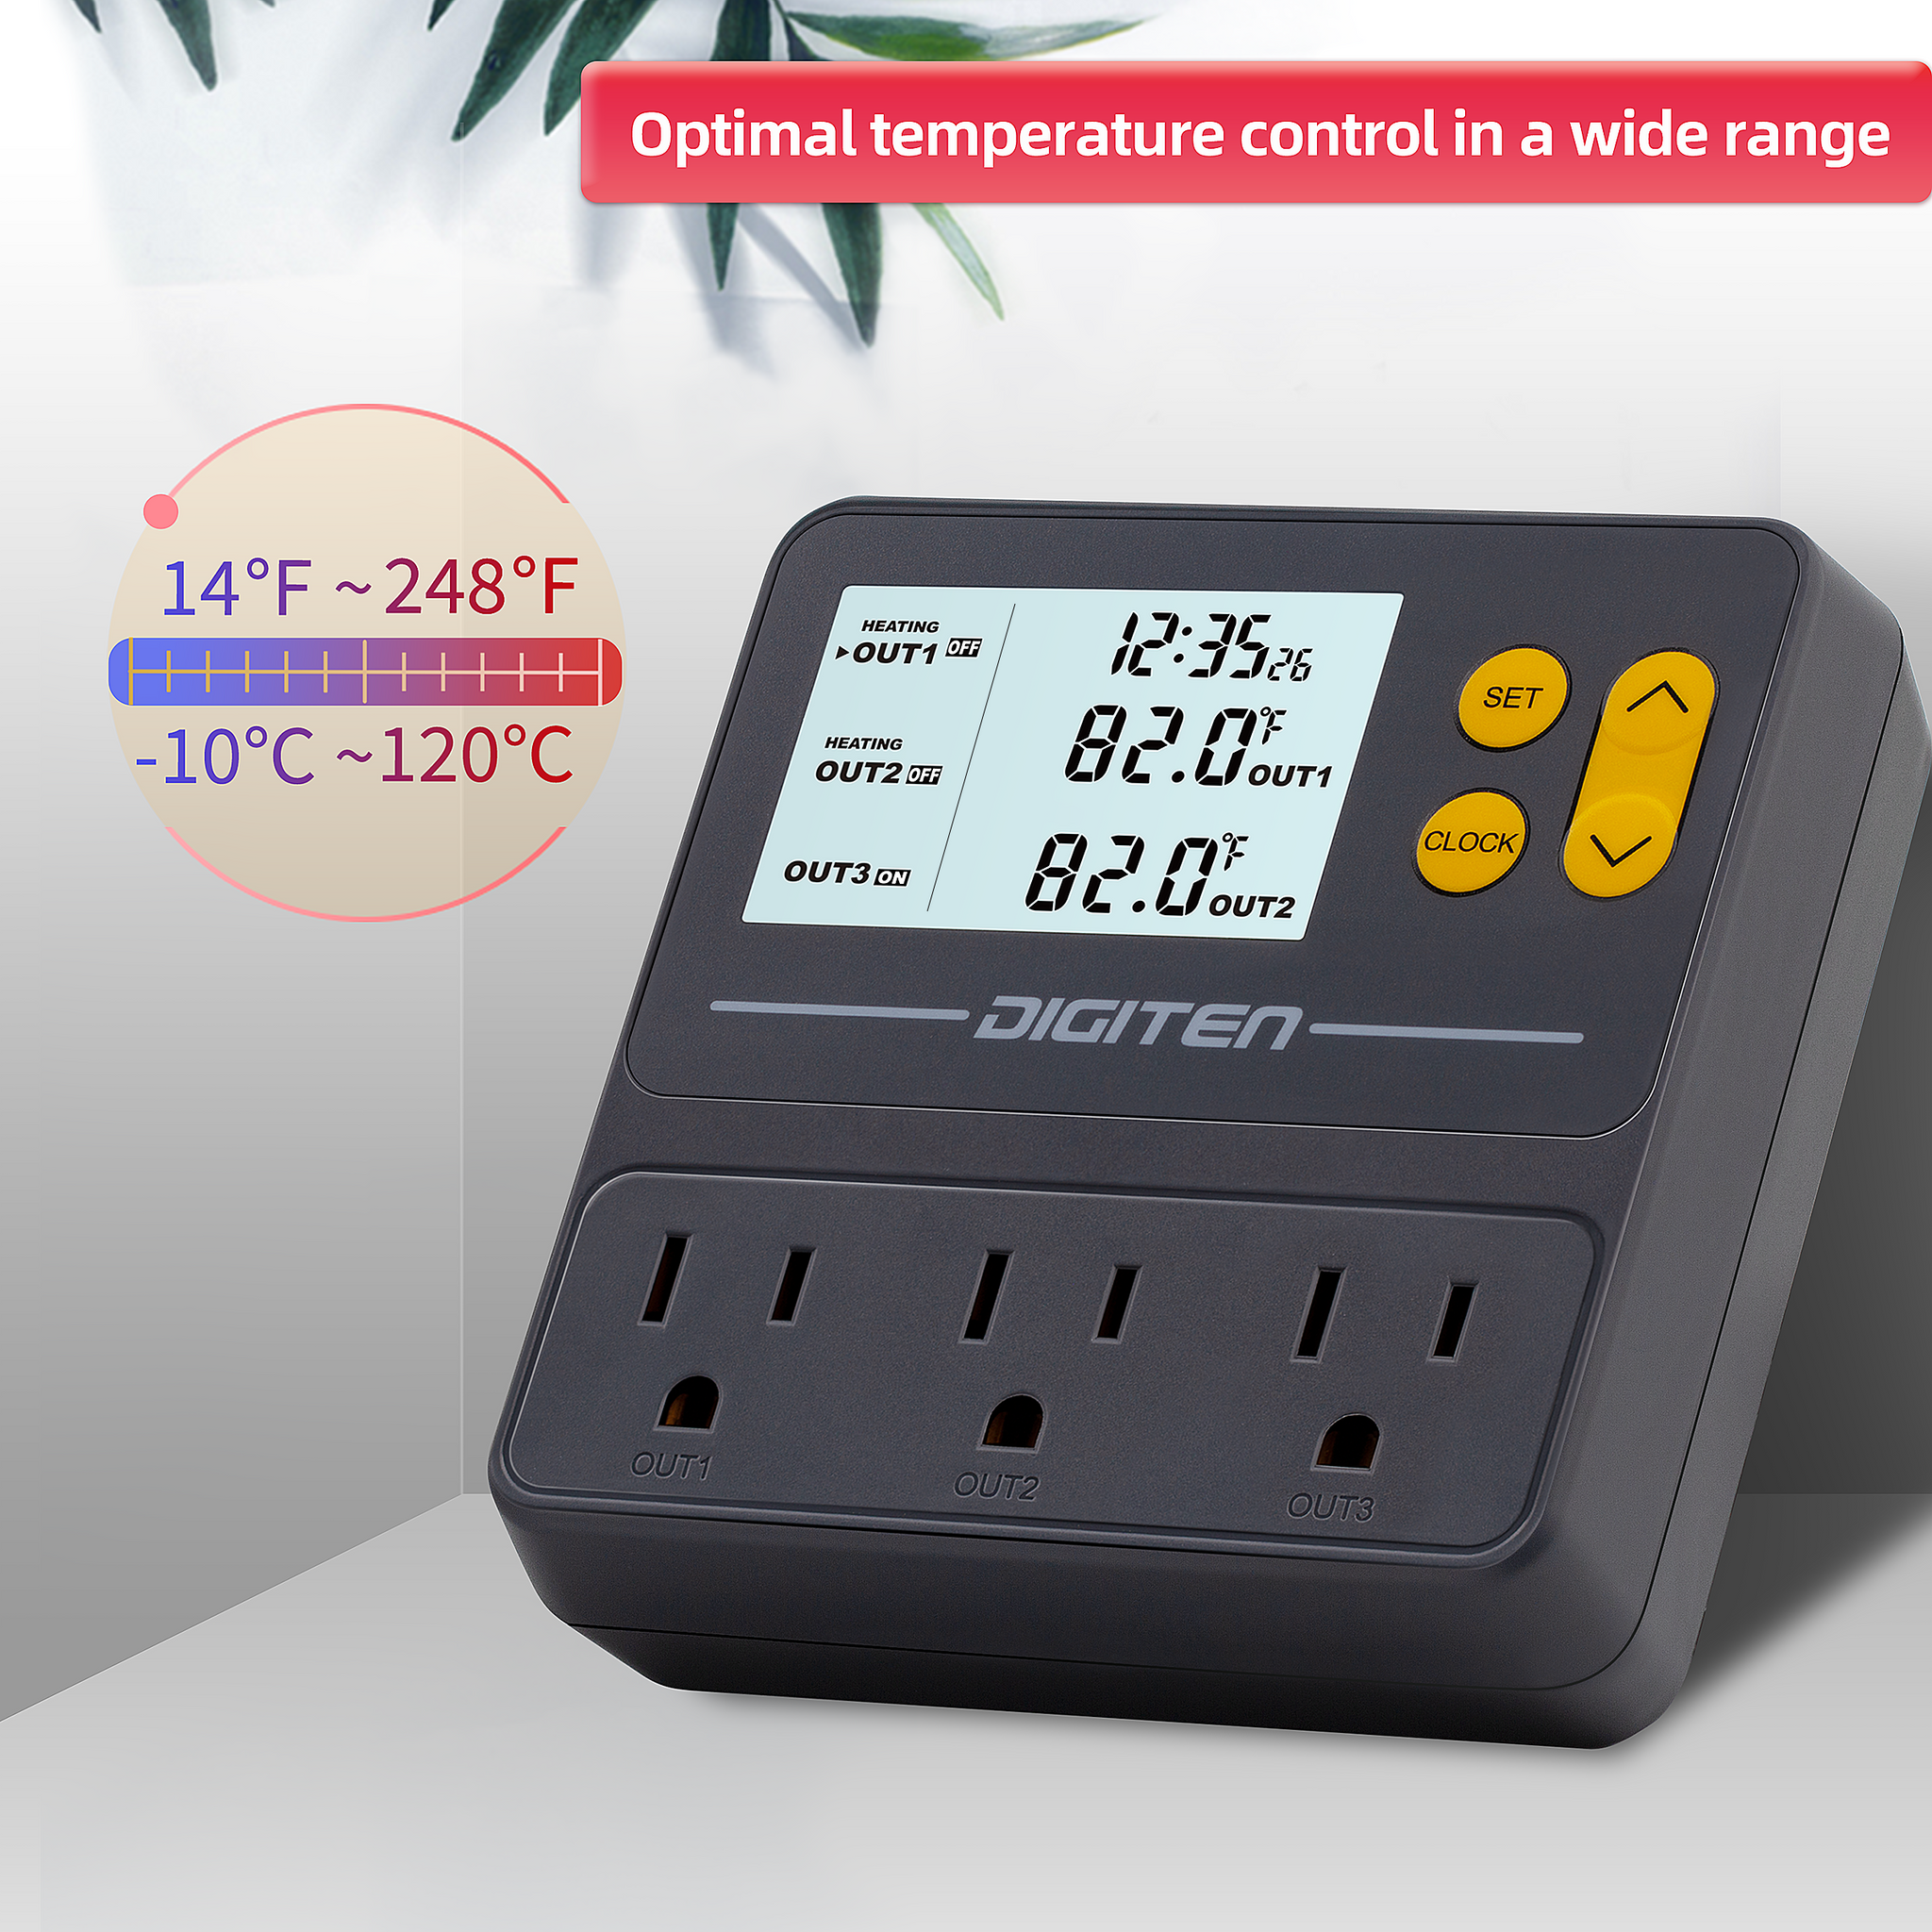 DIGITEN Temperature Controller DTC102 Thermostat Belgium